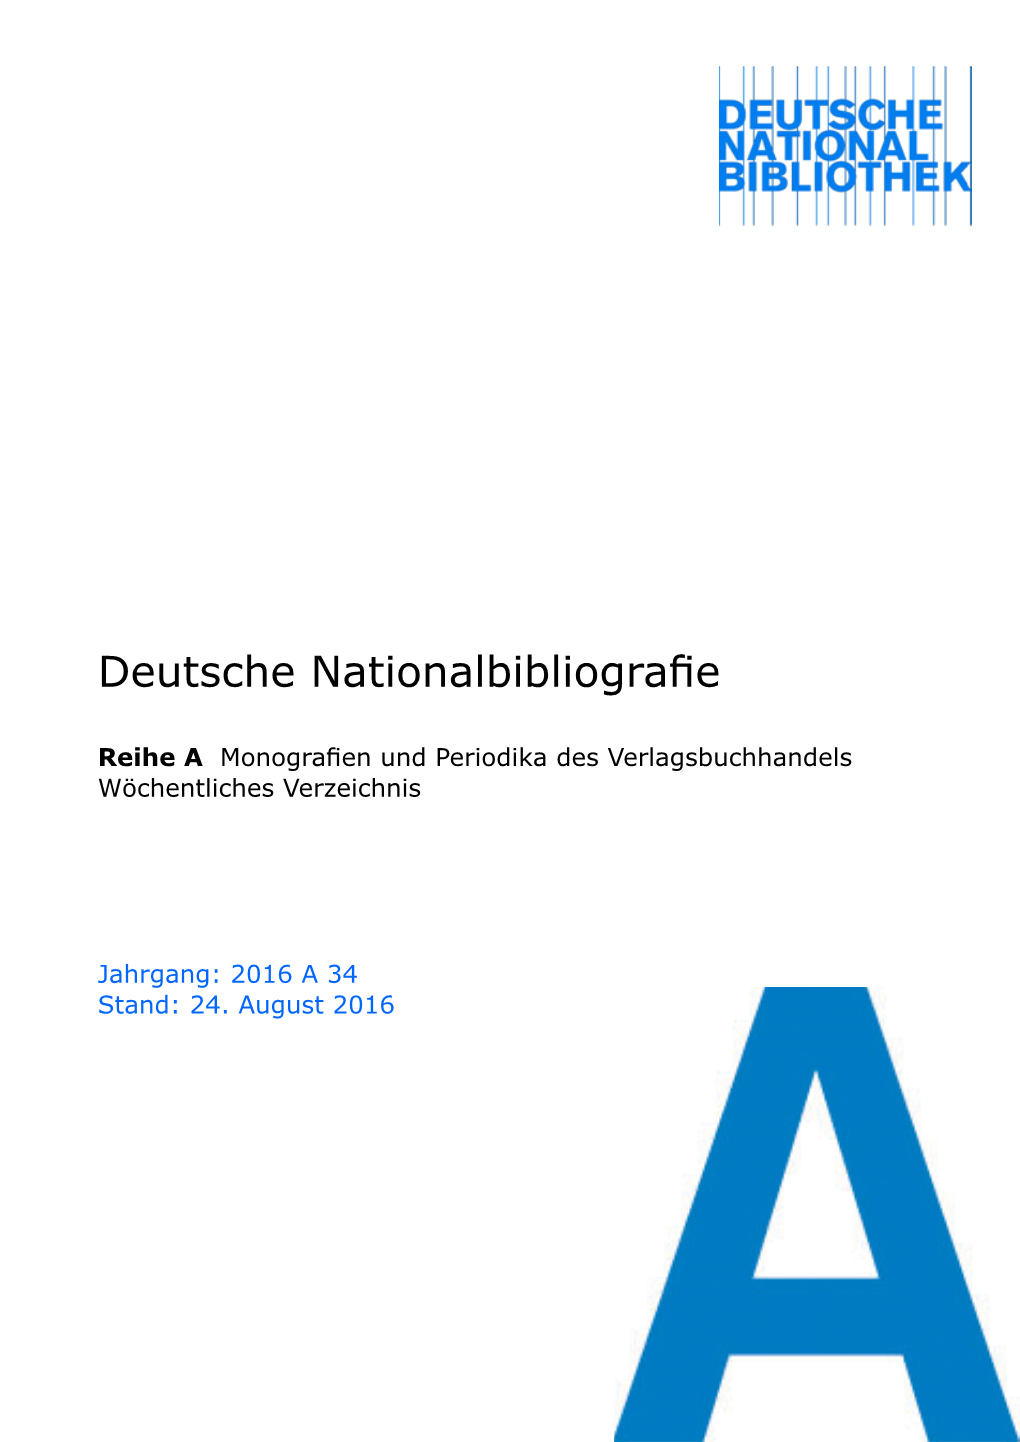 Deutsche Nationalbibliografie 2016 a 34